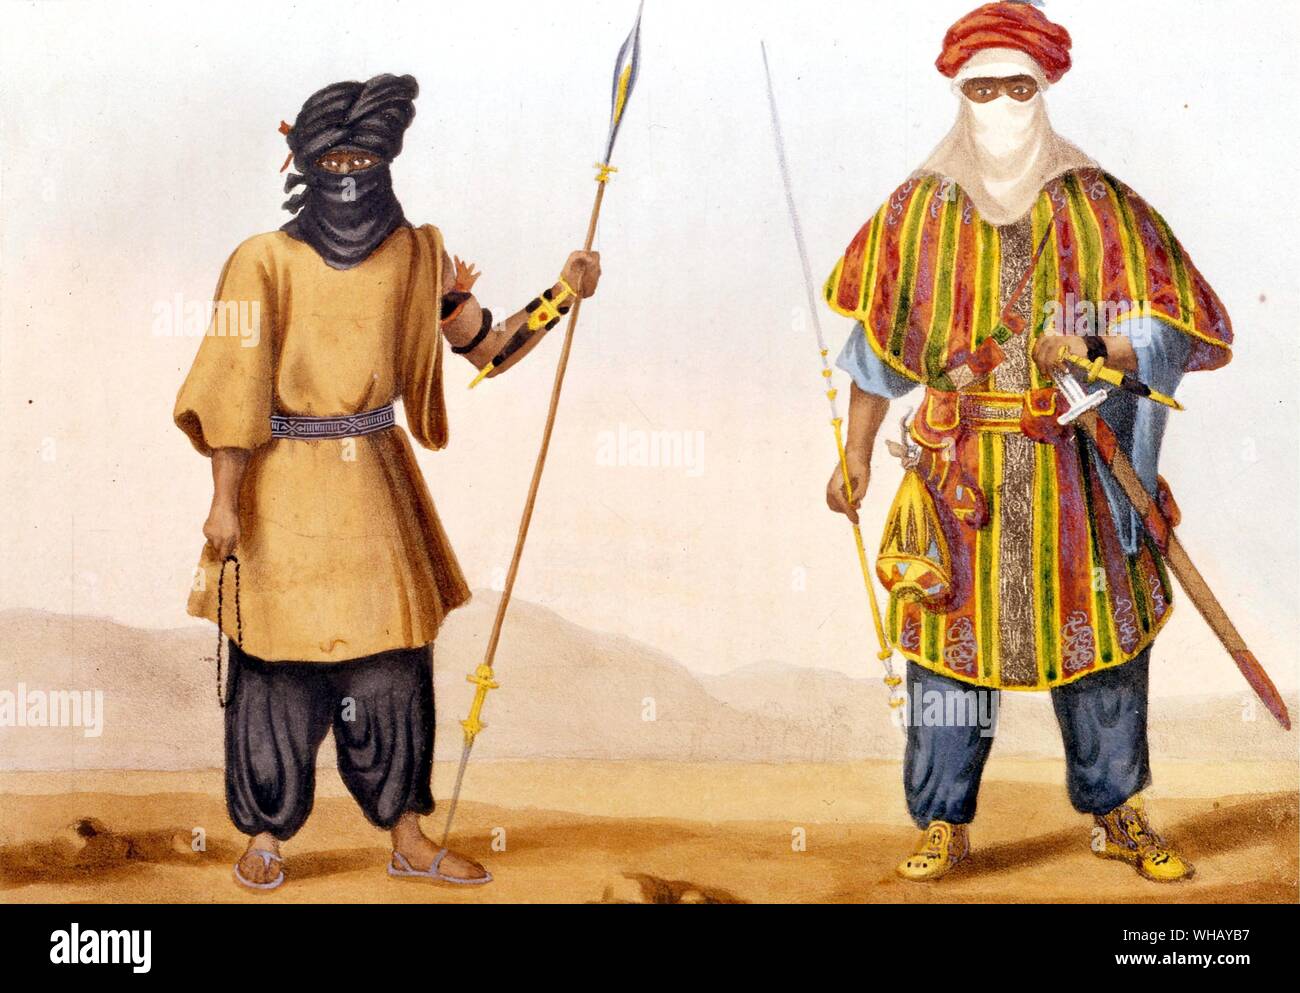 Les touaregs. Les touareg touareg (parfois orthographié en français, ou en anglais Twareg) sont un groupe ethnique berbère ou d'une nation. Touaregs est un nom qui s'applique à eux par les premiers explorateurs et historiens, mais ils s'appellent diversement, Kel Tamasheq, Kel Tamajaq (haut-parleurs de Tamasheq), Imouhar, Imuhagh, Imazaghan, ou Imashaghen (la libre). Le peuple touareg s'identifient également avec le concept Tamust, 'La Nation'. Aujourd'hui, les Touareg se trouvent principalement en Afrique de l'Ouest, mais, comme beaucoup dans le Nord de l'Afrique, étaient autrefois nomades à travers le Sahara. L'aventure africaine - une histoire de l'Afrique. Banque D'Images